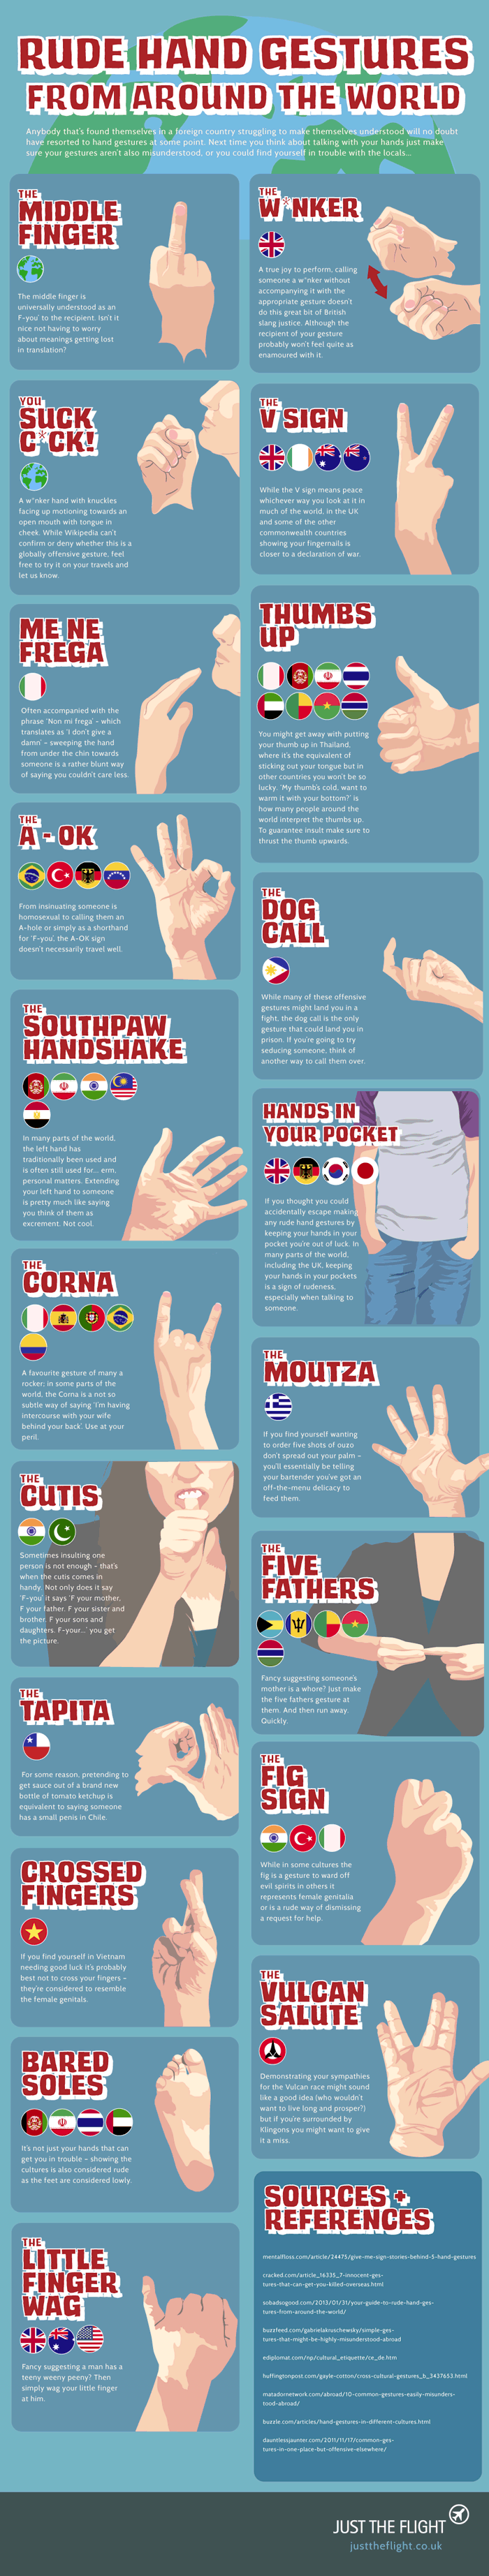 Rude Hand Gestures